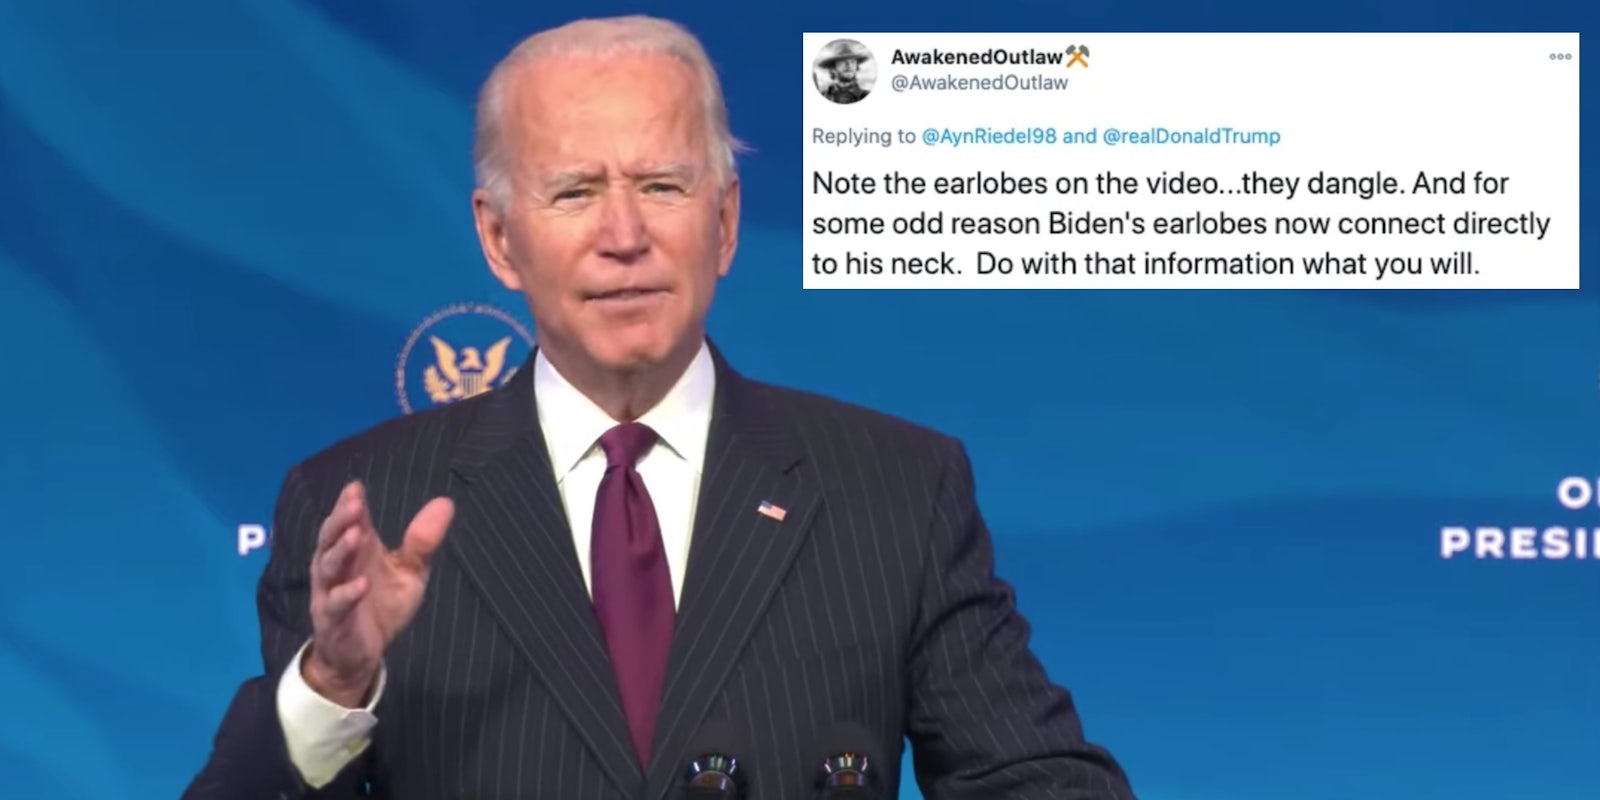 Joe Biden next to a tweet